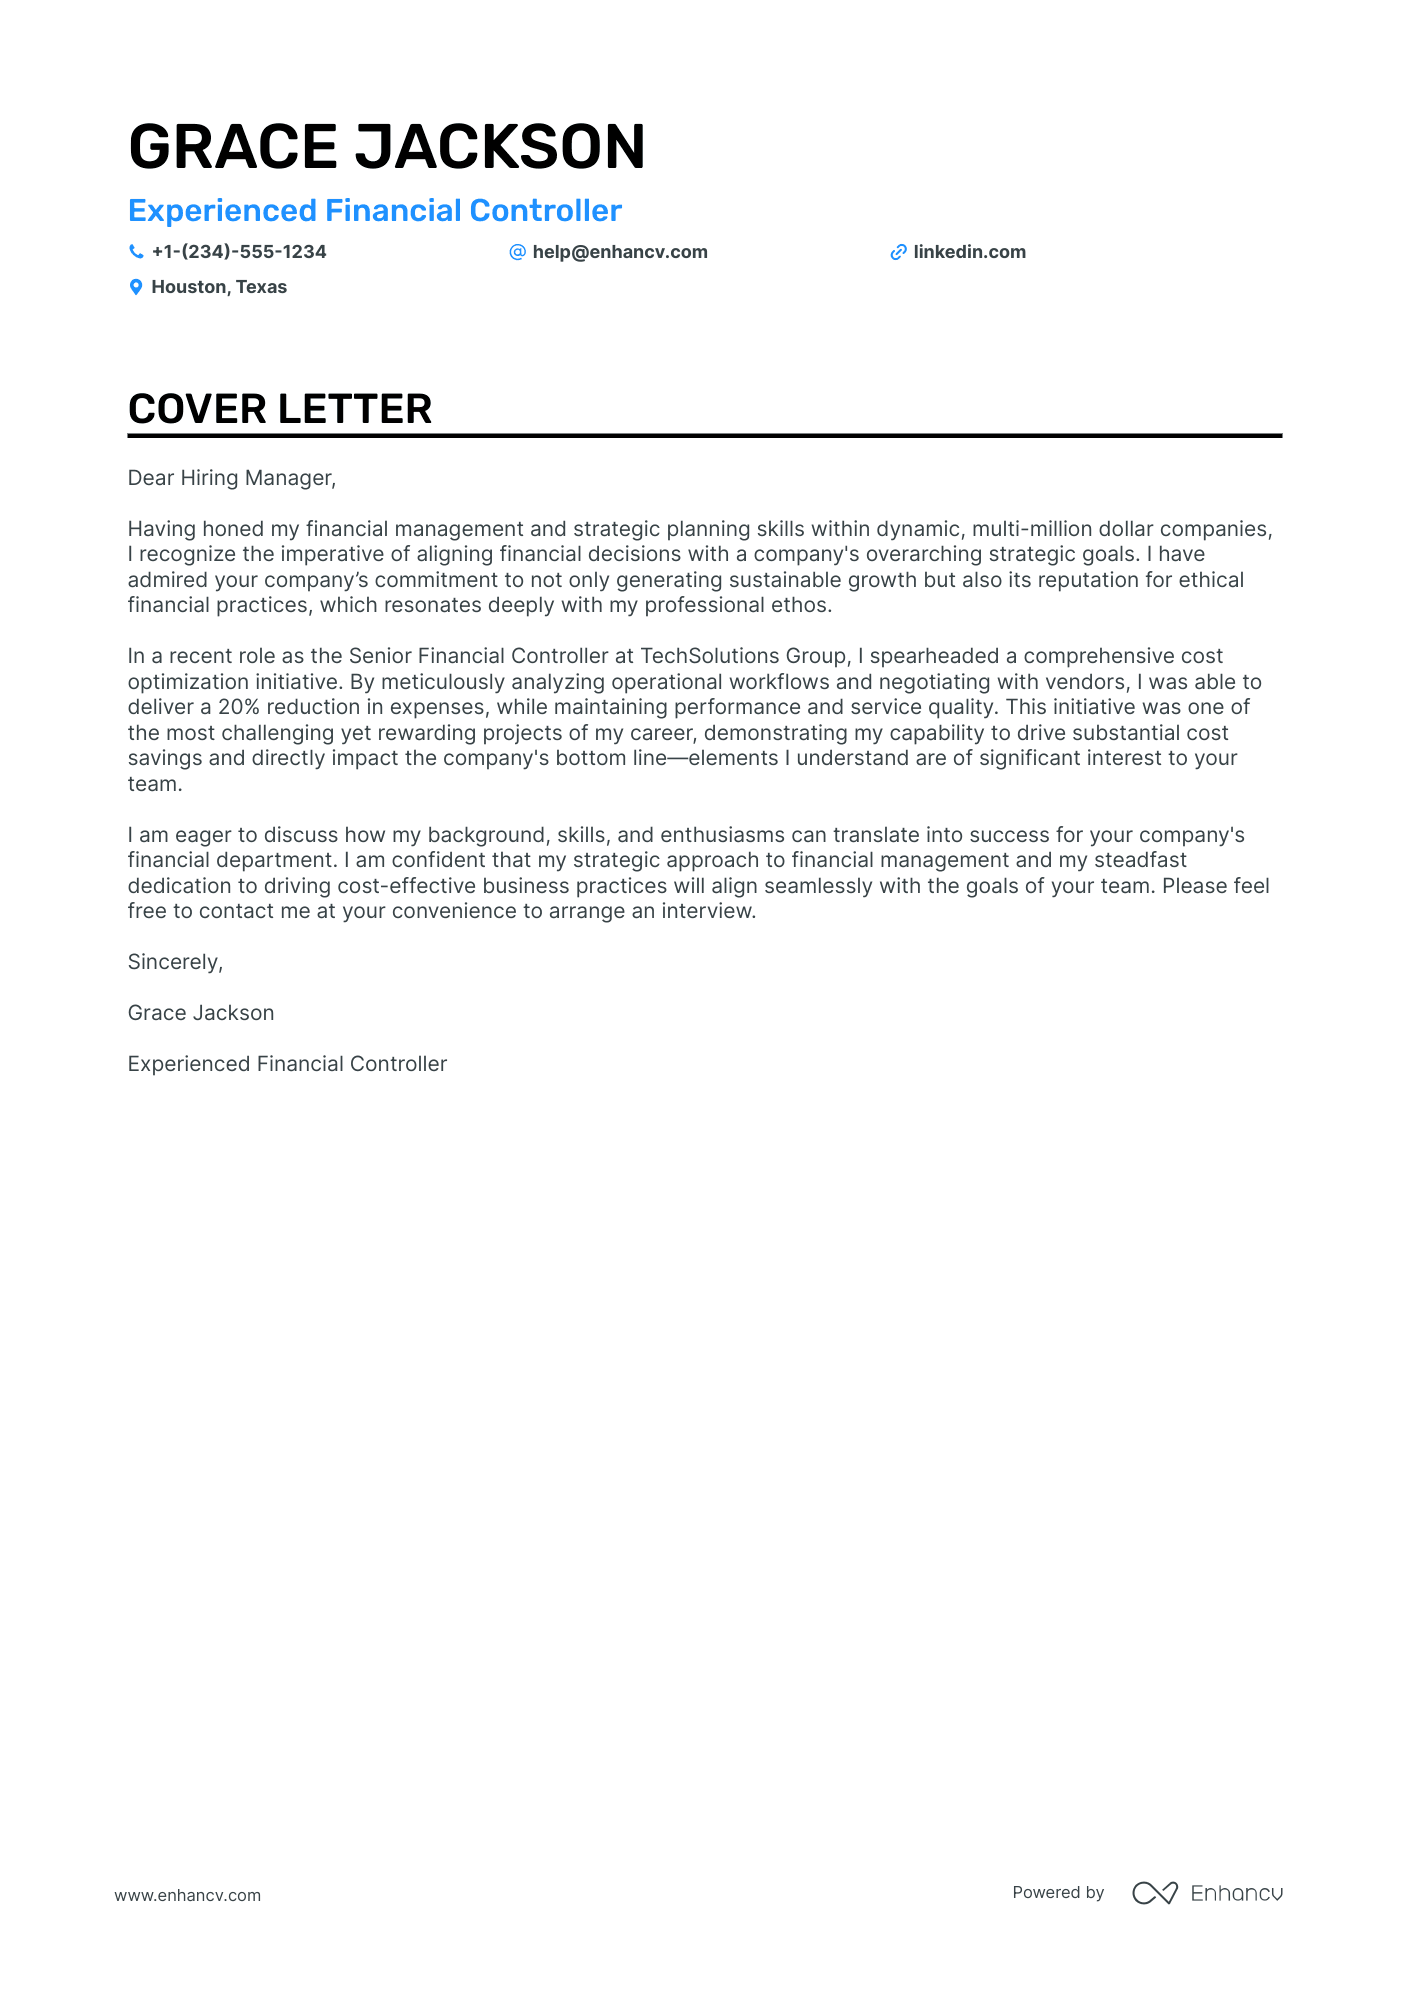 cover letter sample for job application in finance